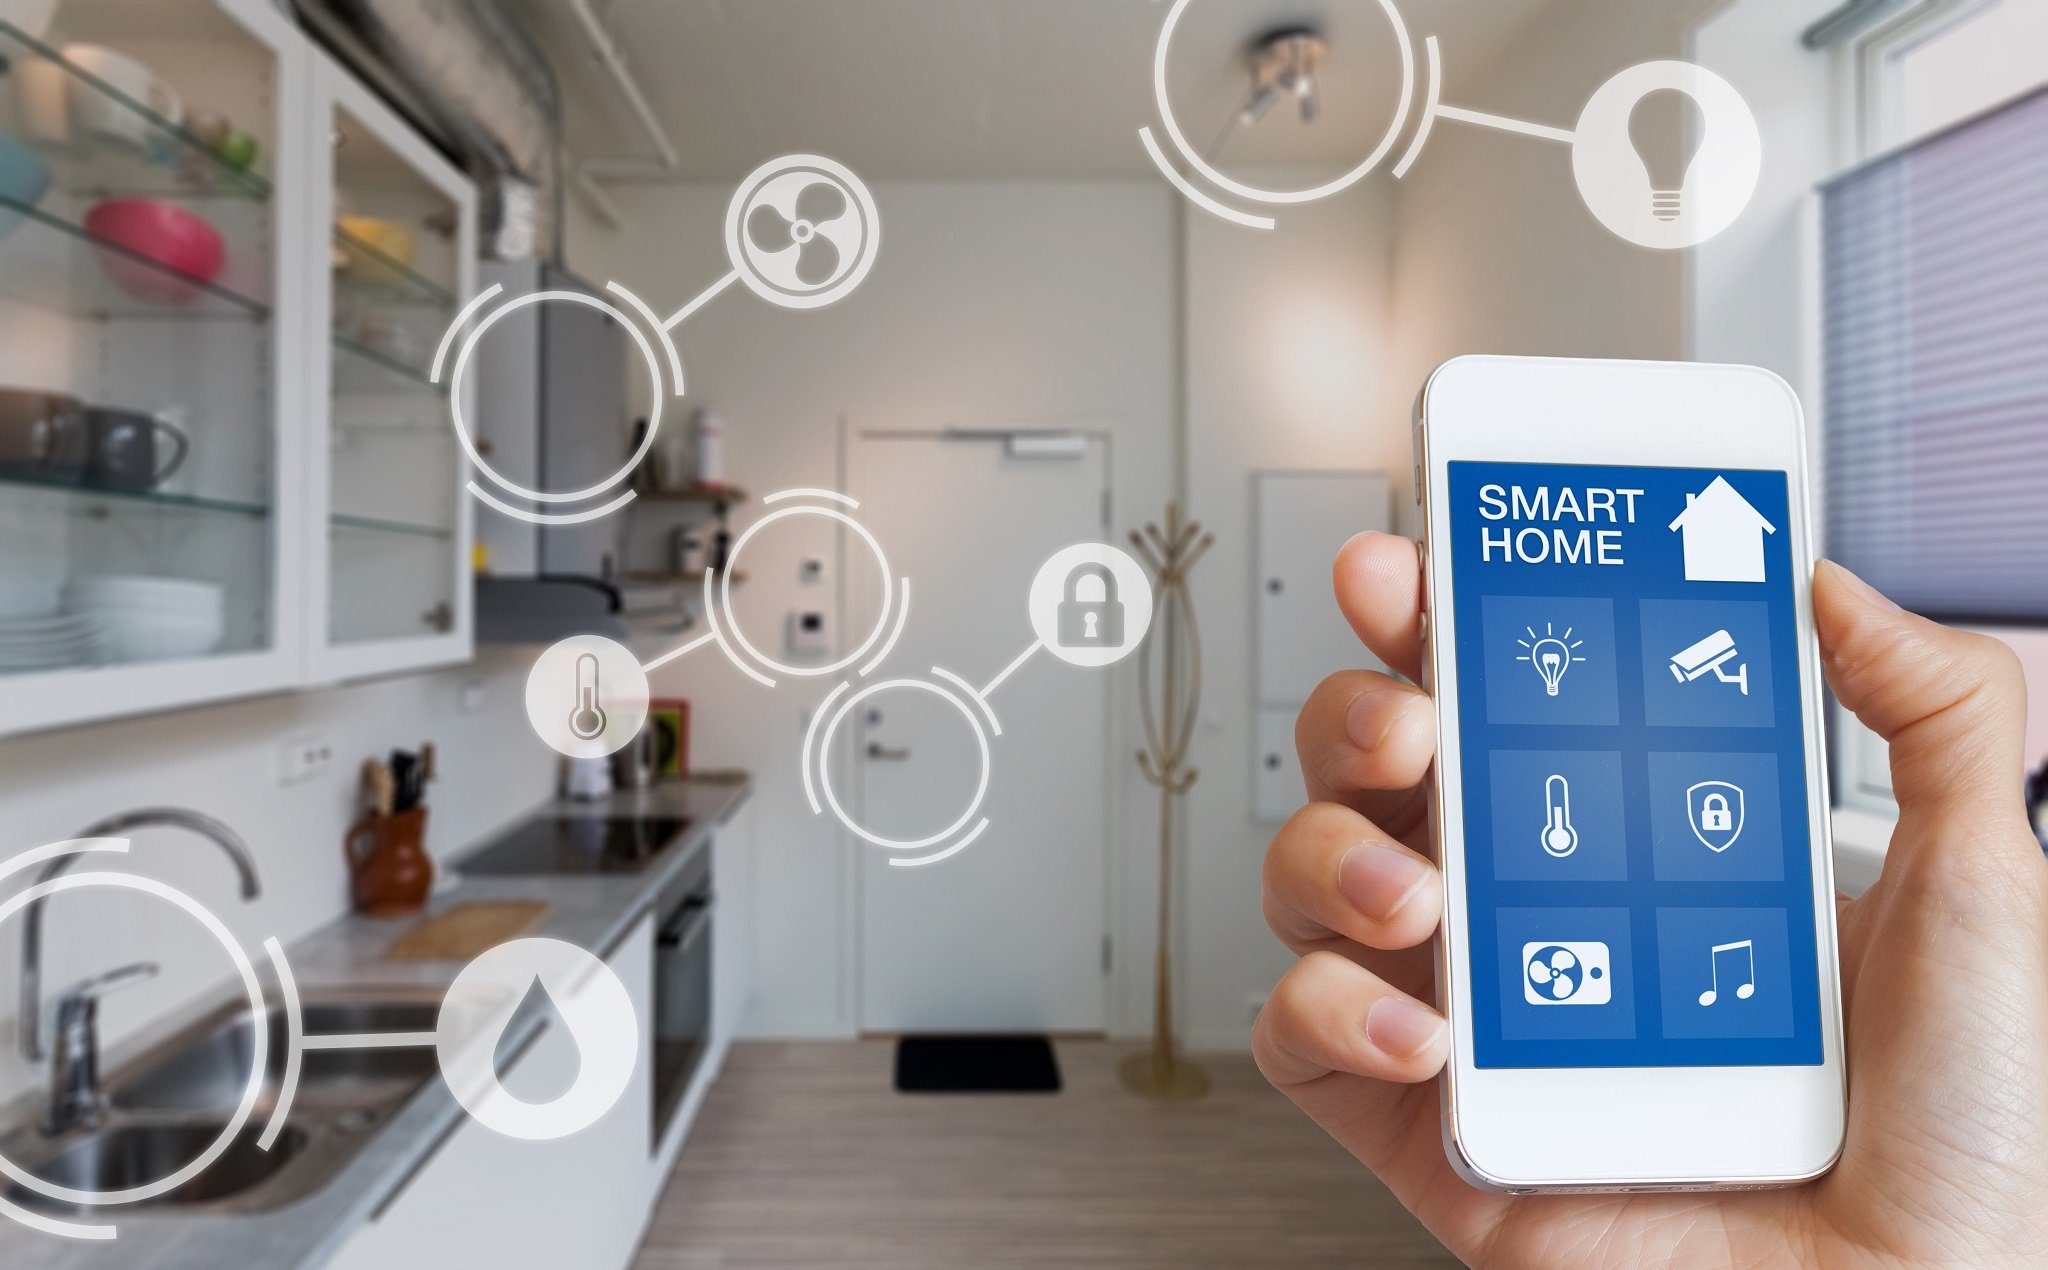 Xu hướng Nhà Thông Minh – Smart Home năm 2020 và Tương Lai!